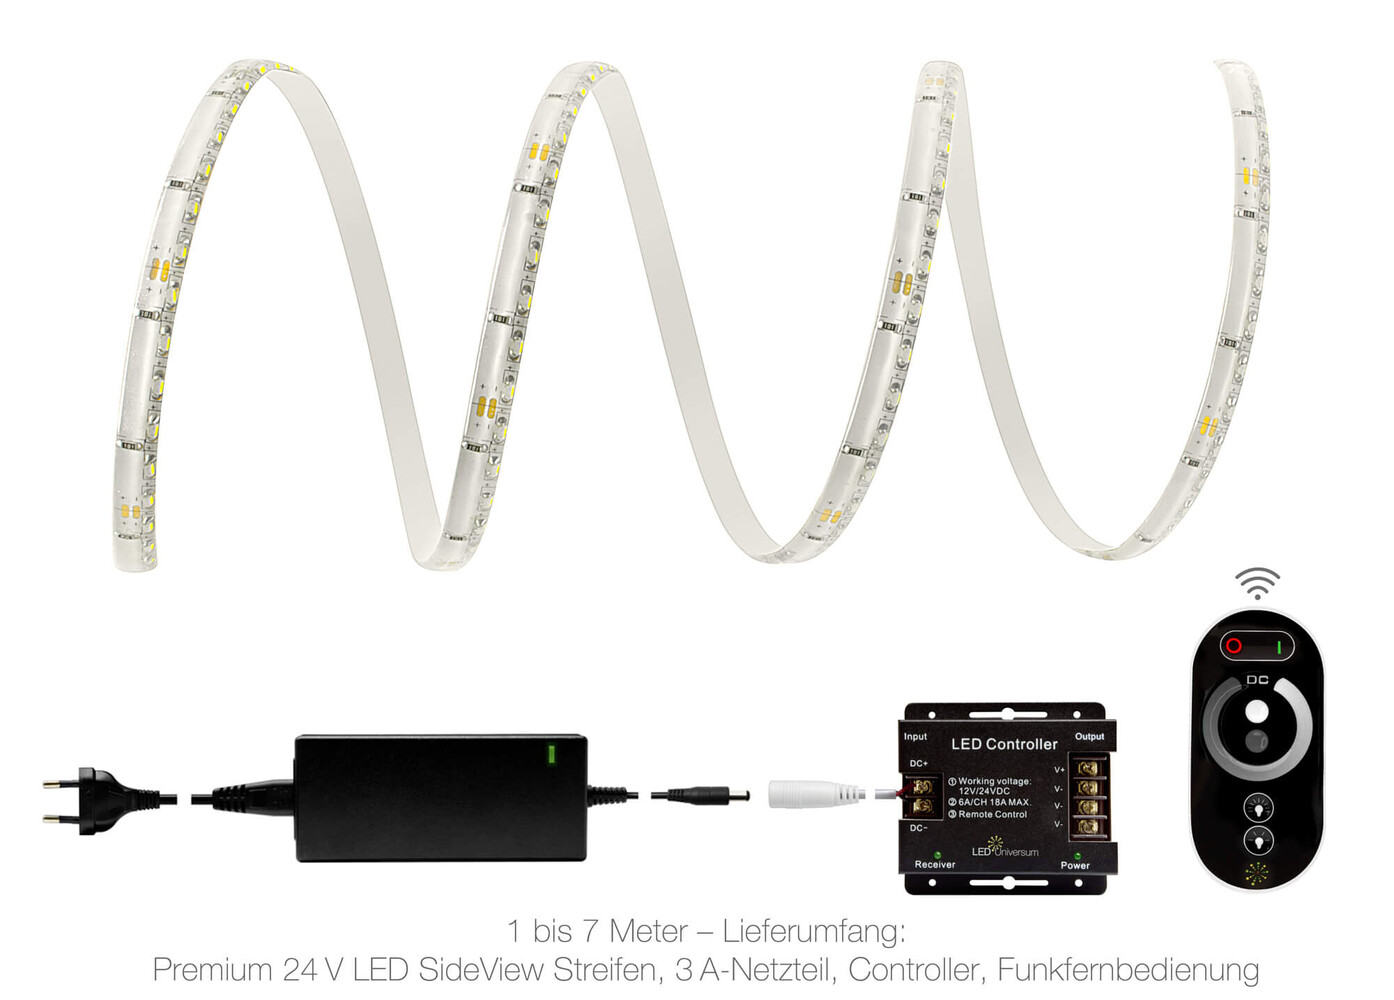 Hochwertiger warmweißer LED Streifen von LED Universum mit moderner SideView Technologie